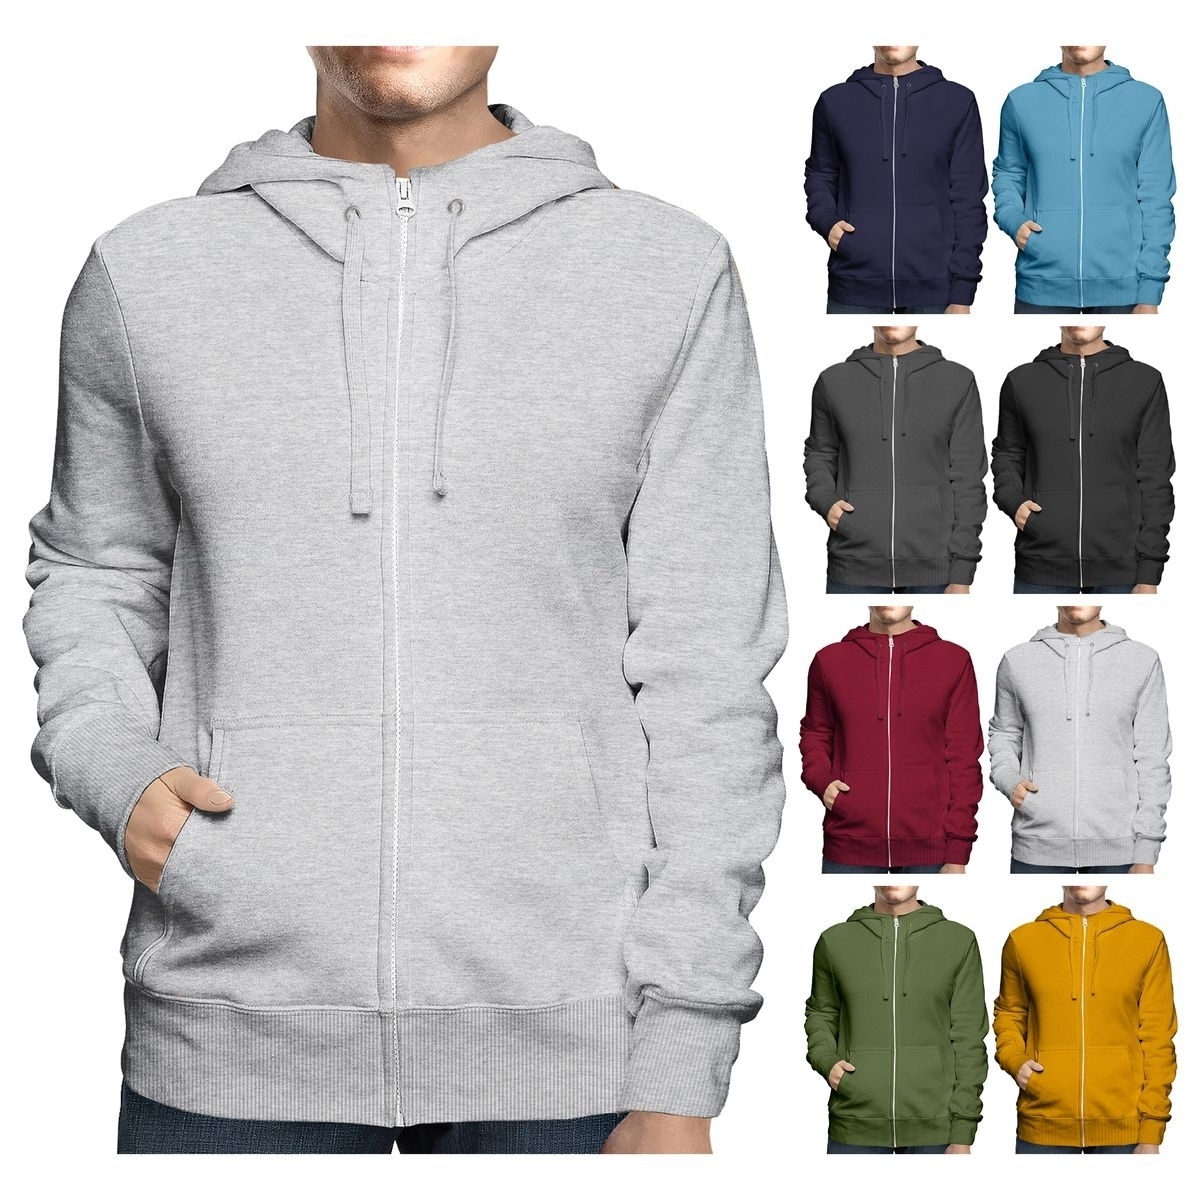 Men's Big & Tall Winter Warm Soft Cozy Full Zip-Up Fleece Lined Hoodie Sweatshirt - Navy, X-Large